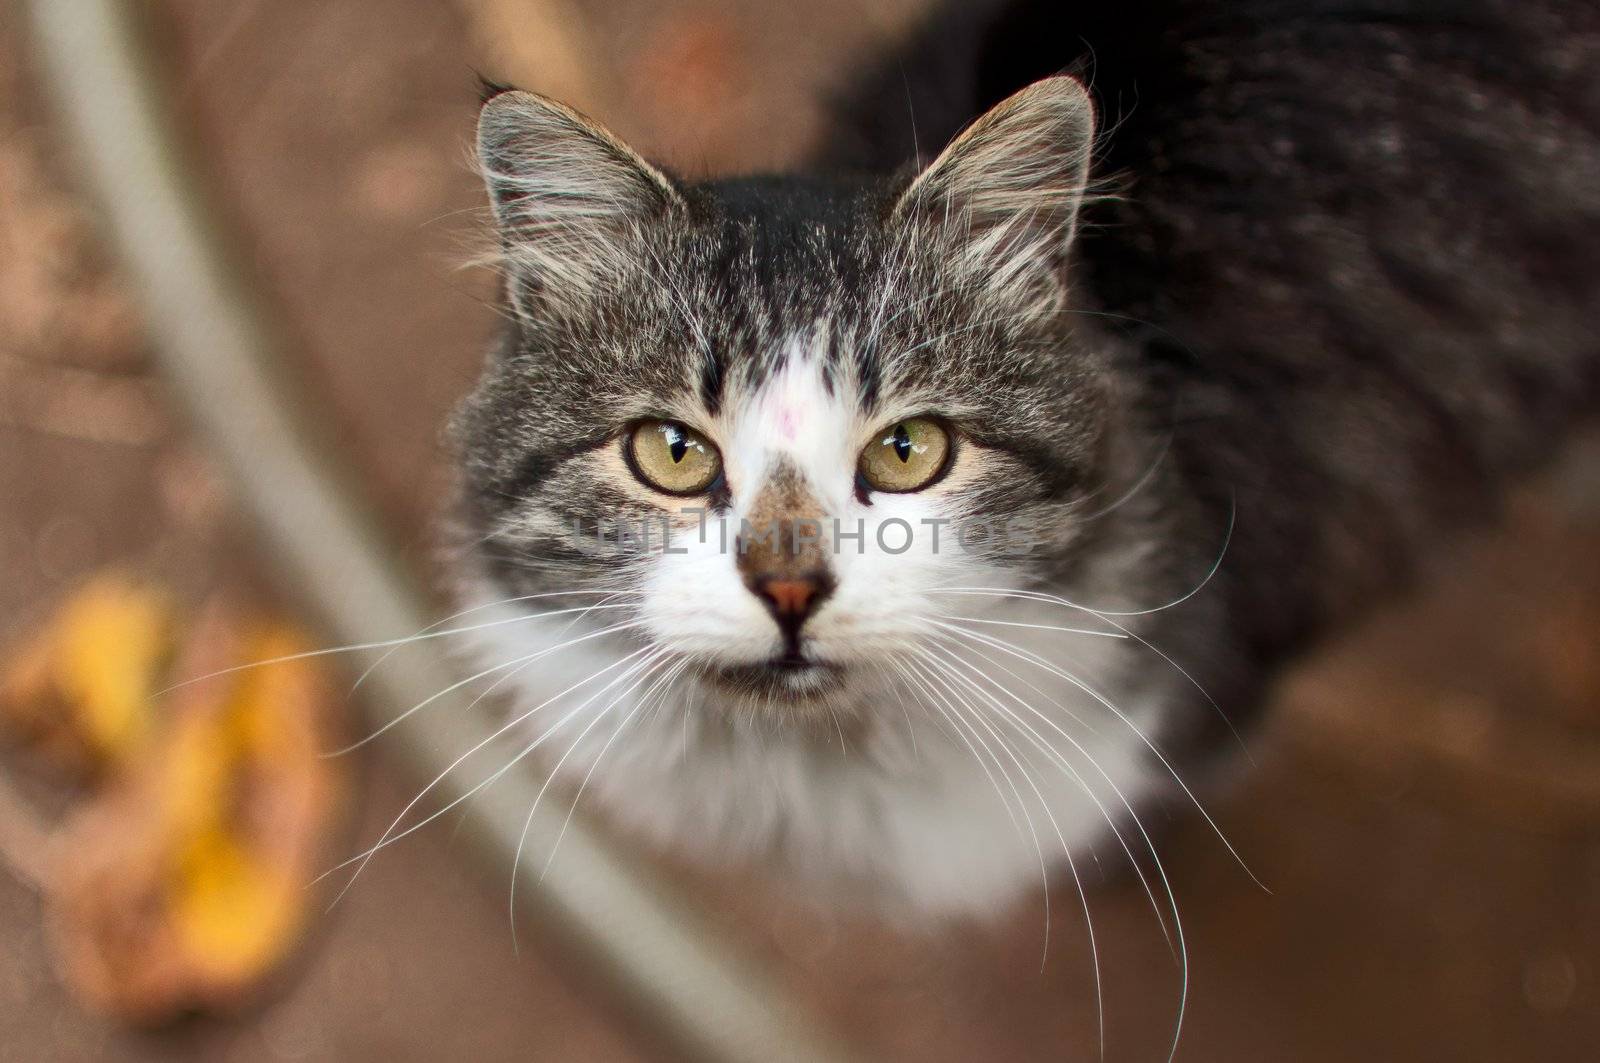 Portrait of a beautiful rural cat, close up.